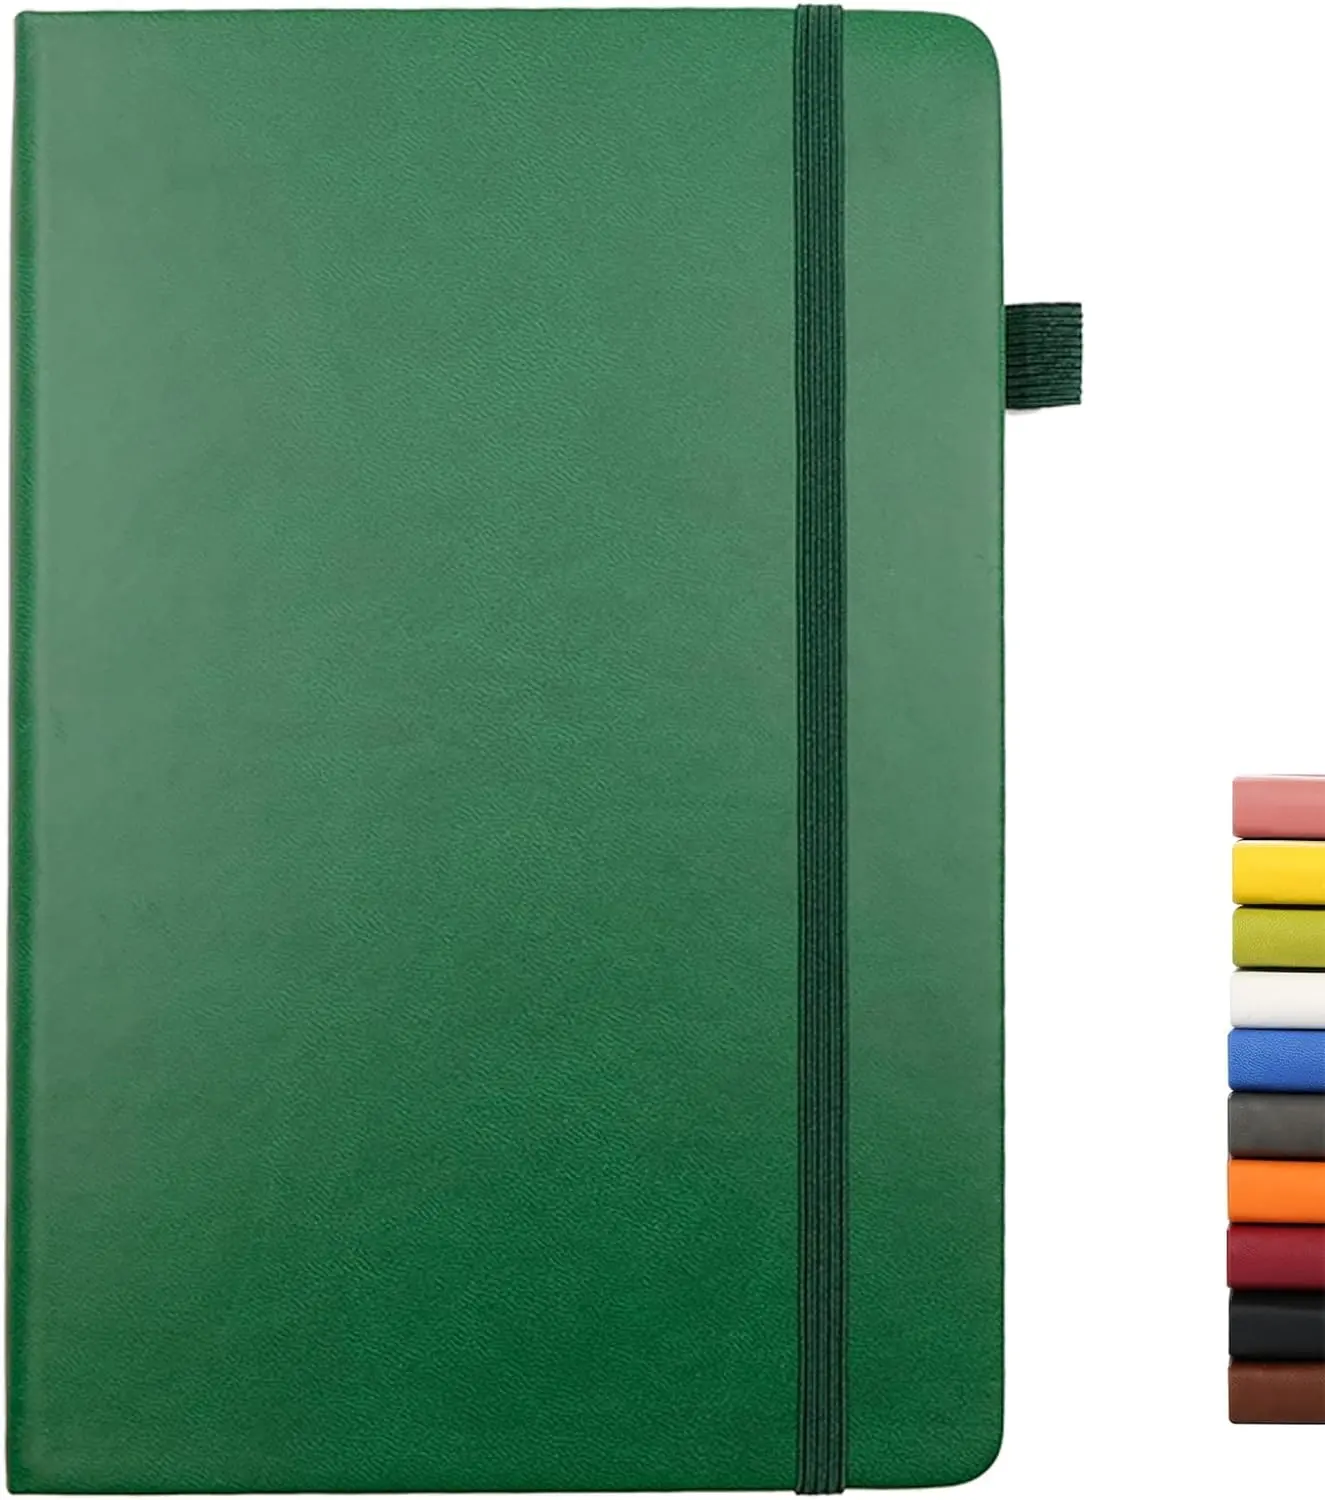 Caderno de capa dura com caneta, caderno medium 5.7"x8.4", papel grosso premium 100gsm com bolso interno para wok